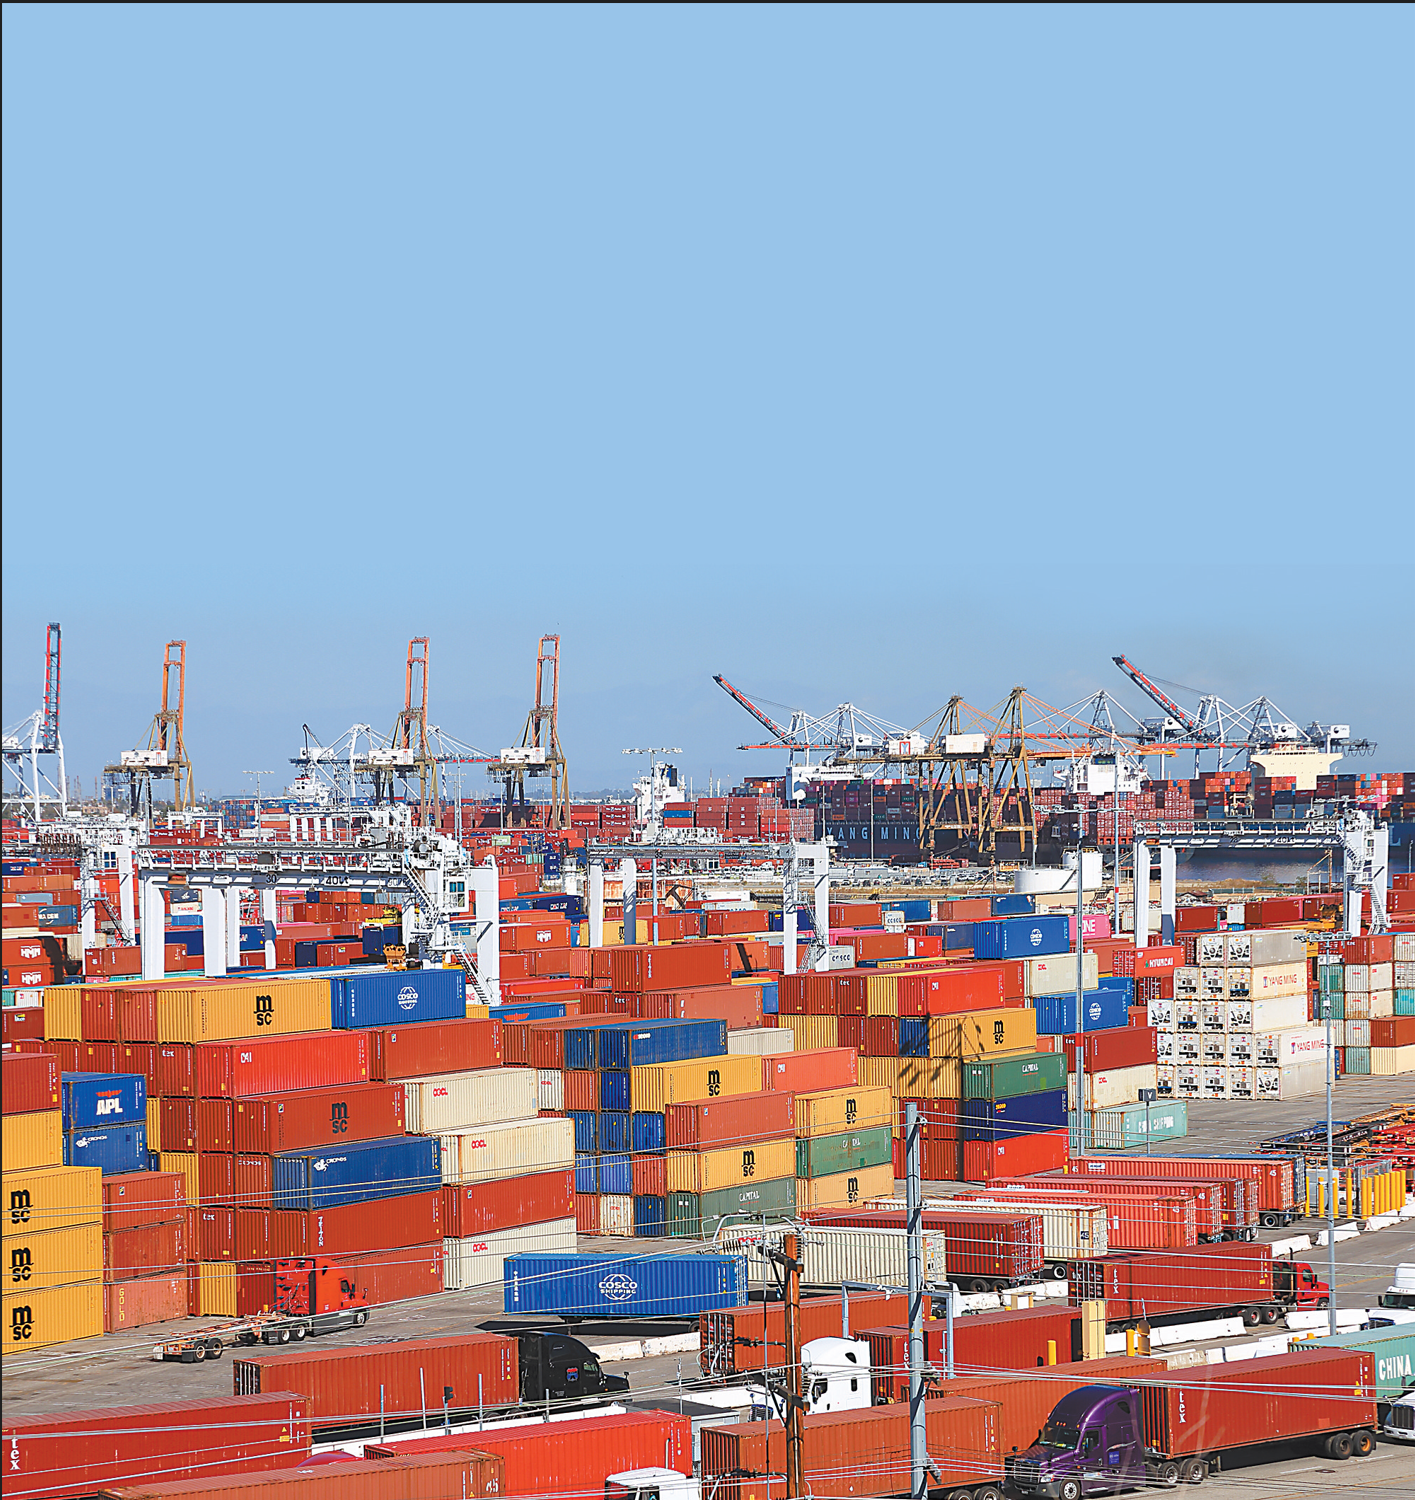 原本“一箱难求”的国际海运市场现在却被空集装箱堆积困扰。图为美国洛杉矶港。(视觉中国)